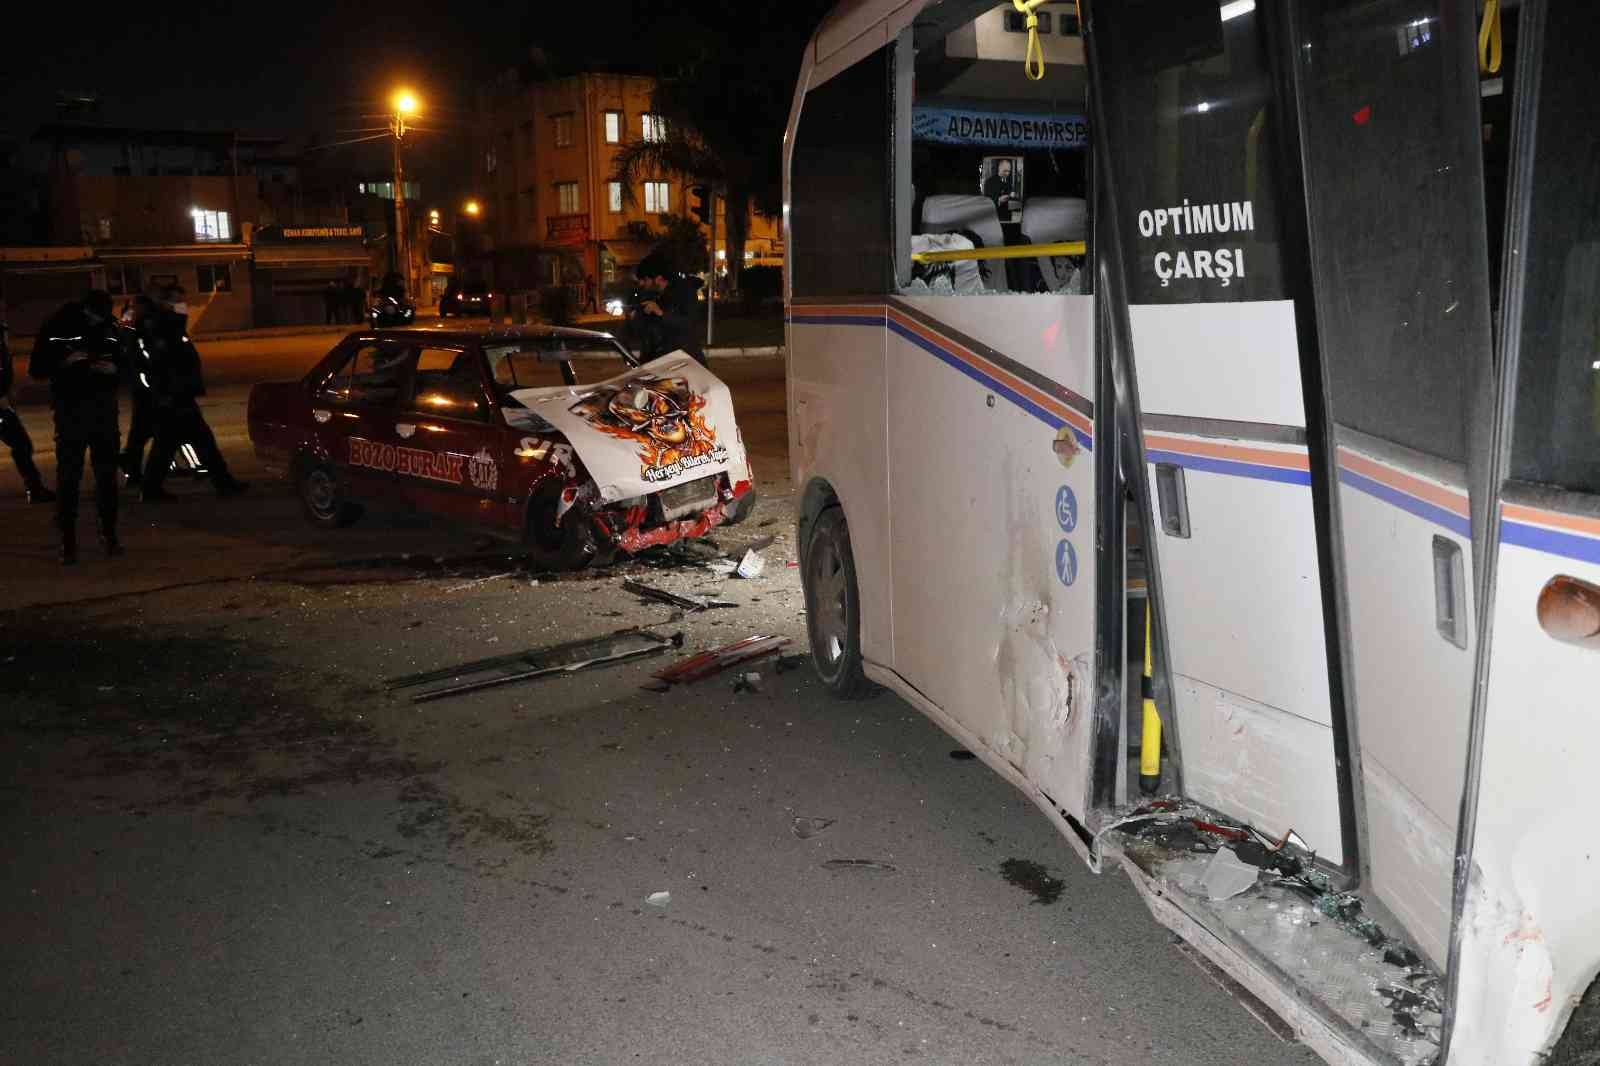 Adana’da plastik sandalye ile sürülen otomobille yolcu minibüsü çarpıştı: 1’i ağır 3 yaralı #adana